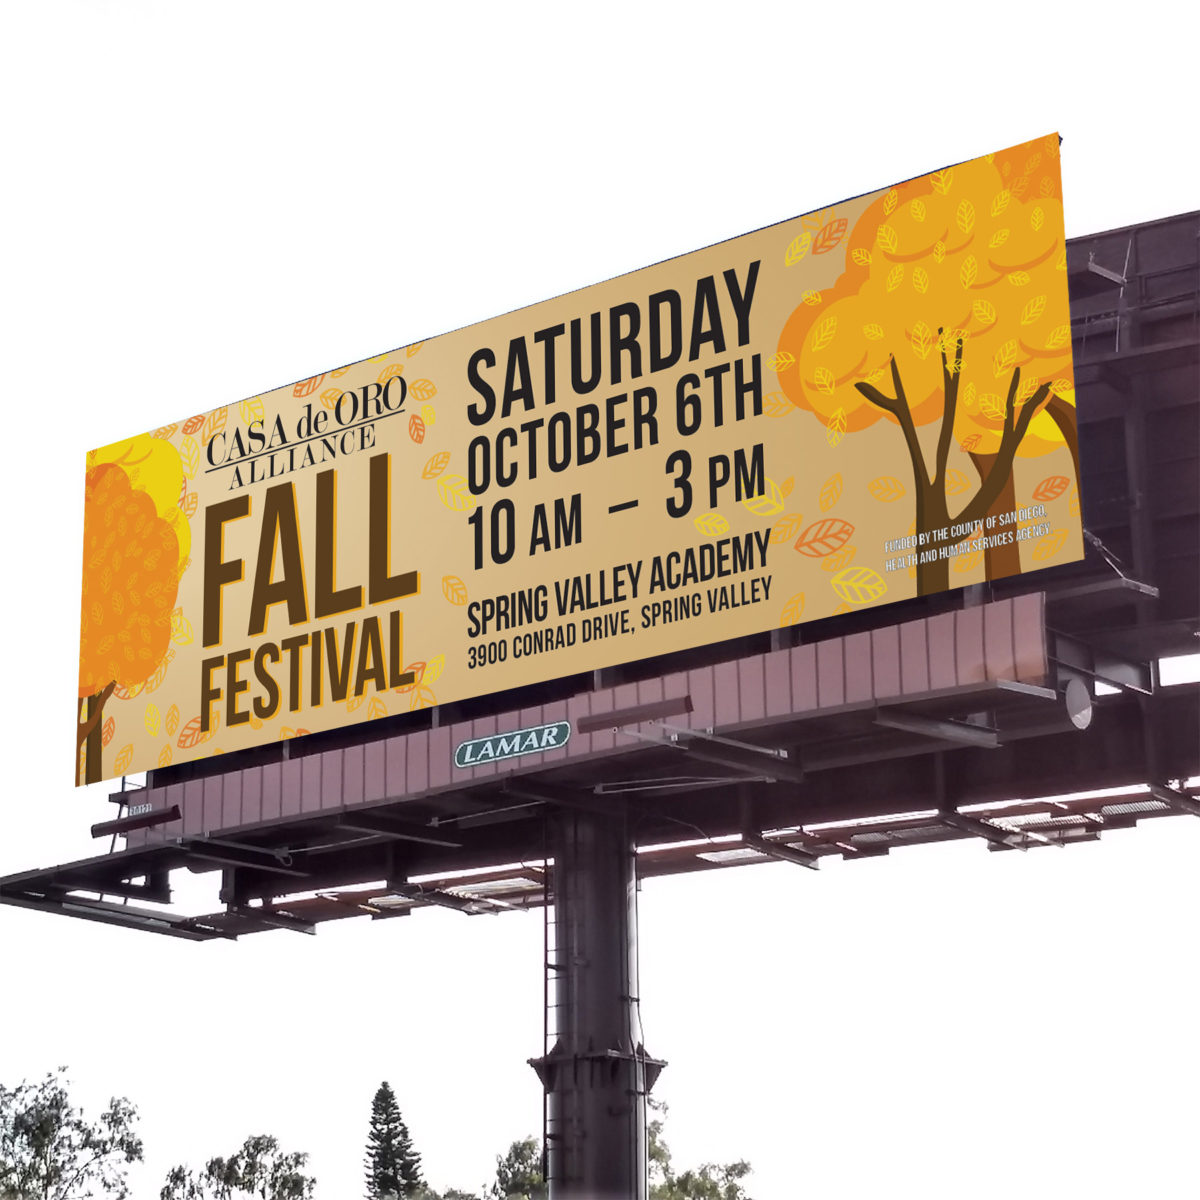 Casa de Oro Alliance Fall Festival 2018 Billboard